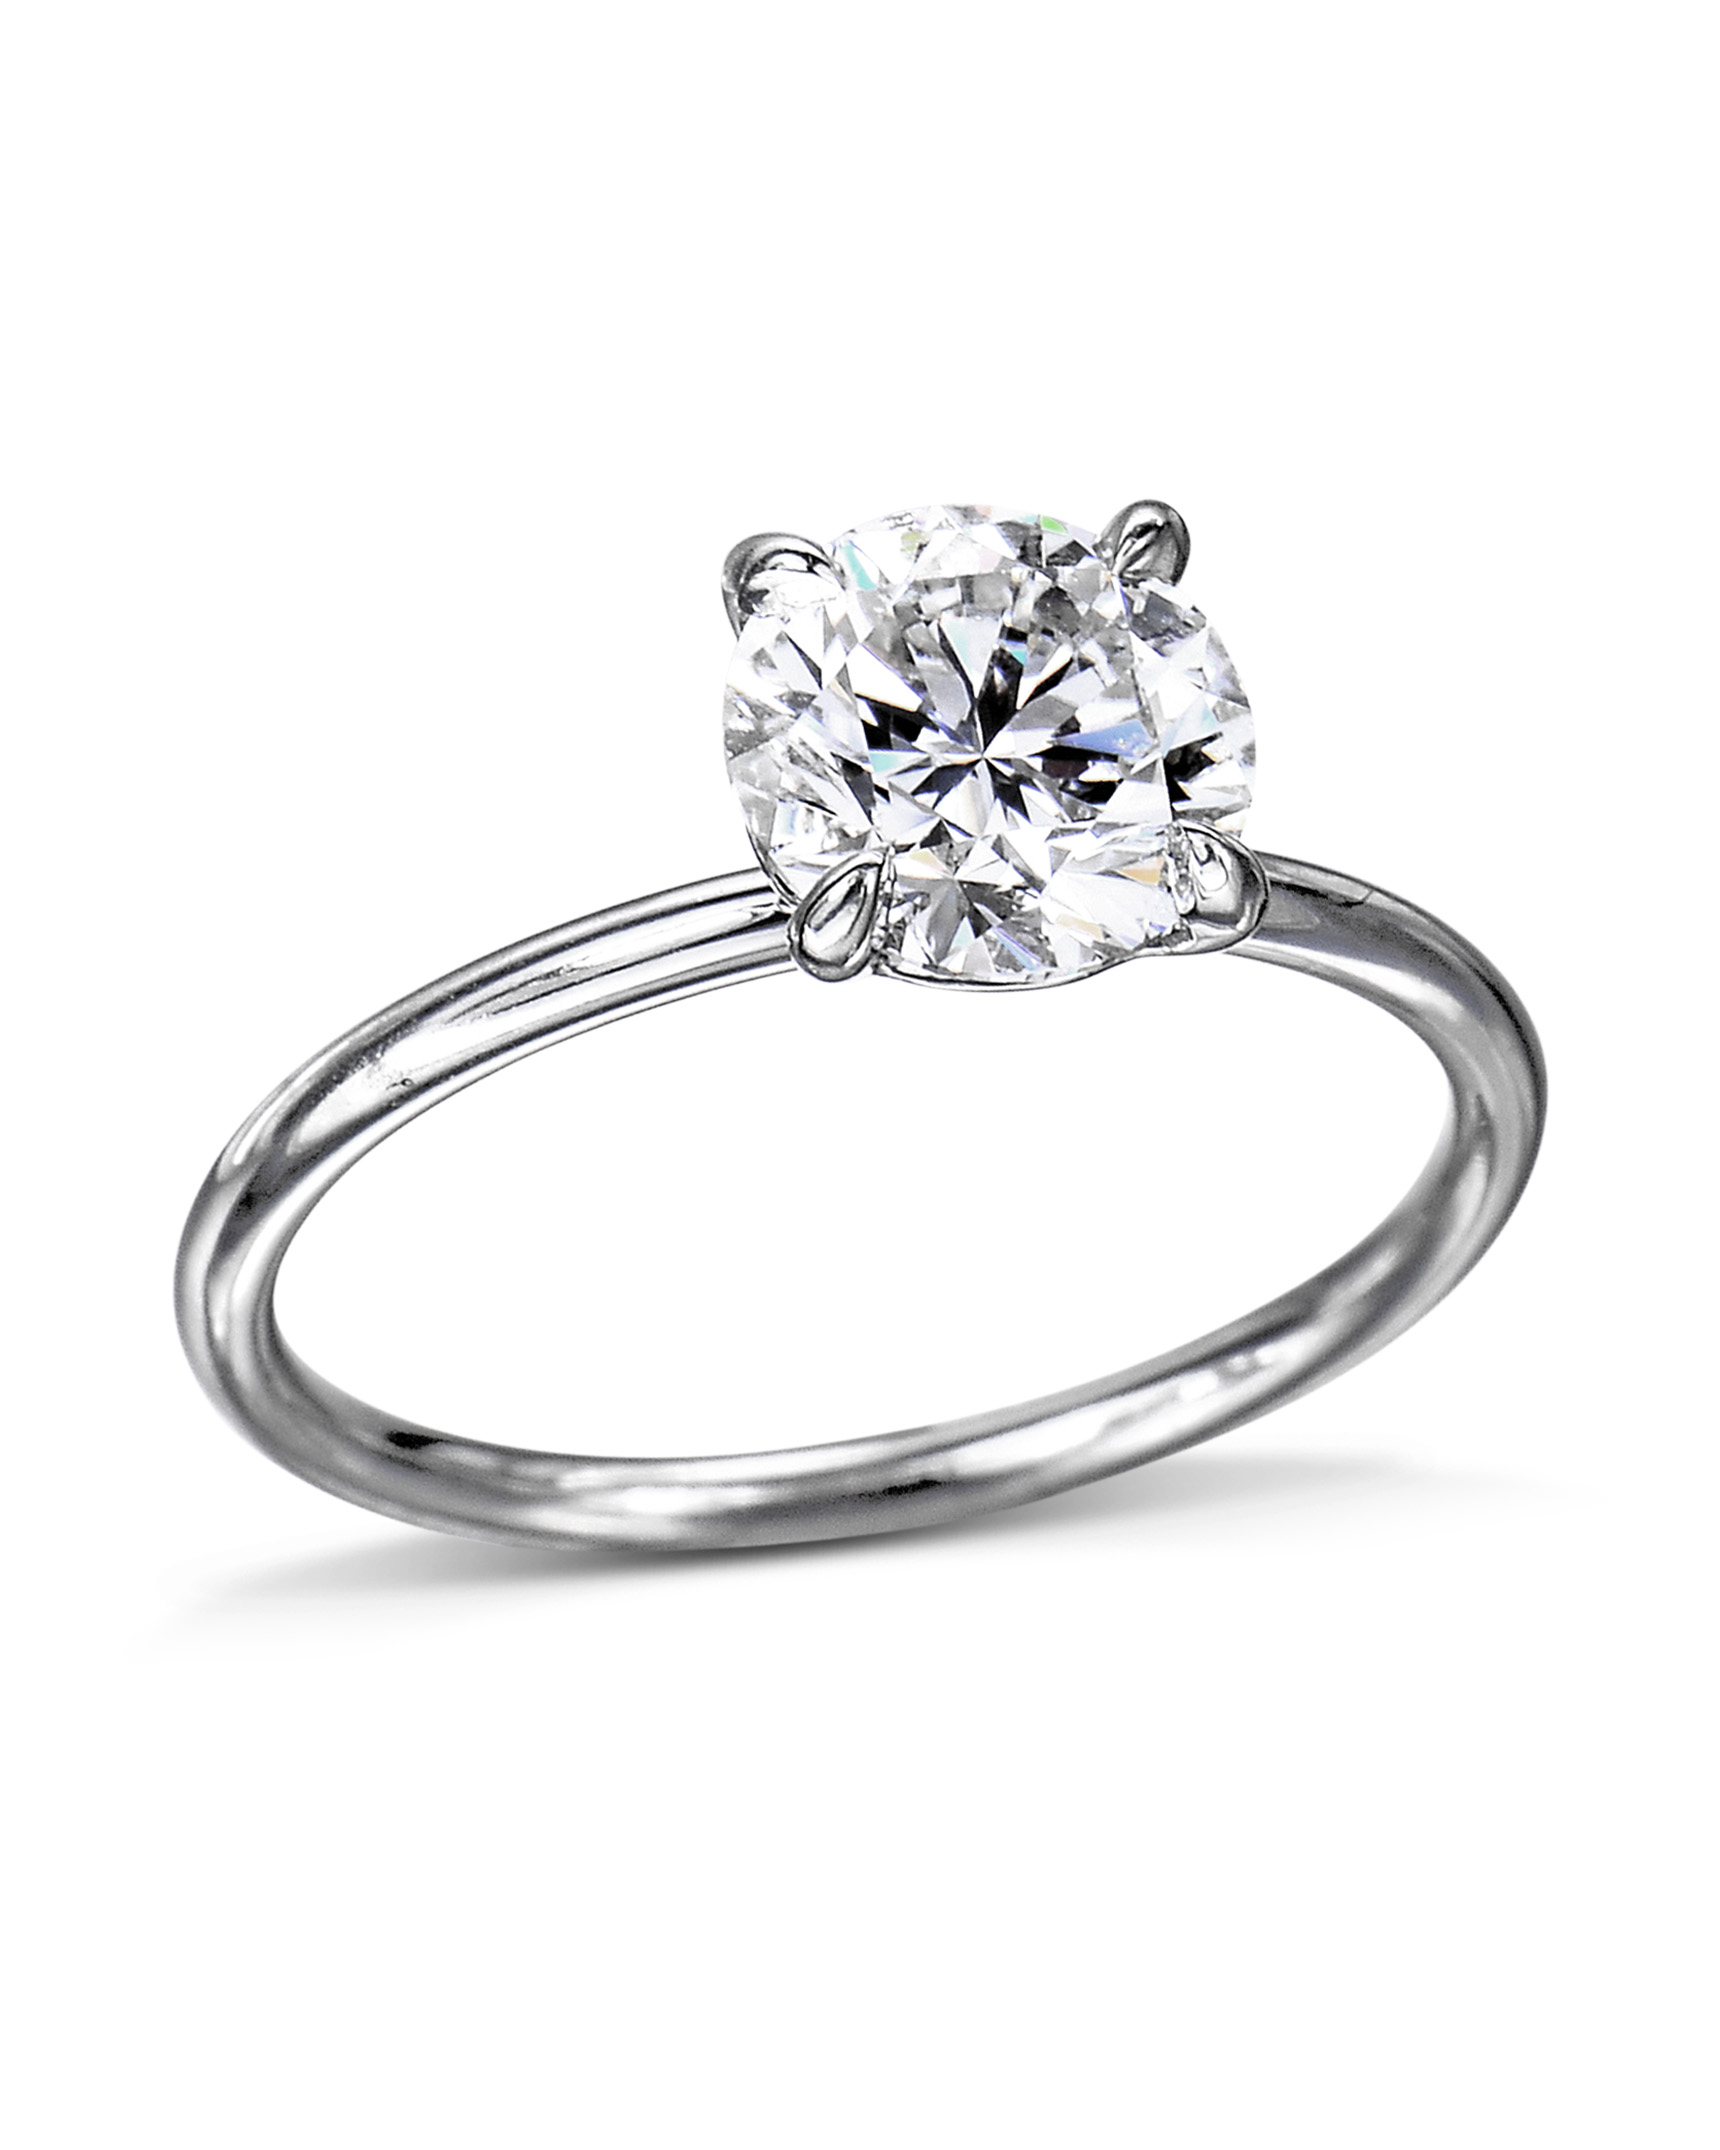 Buy Designer Diamond Platinum Ring for Women JL PT R-8013 Online in India -  Etsy